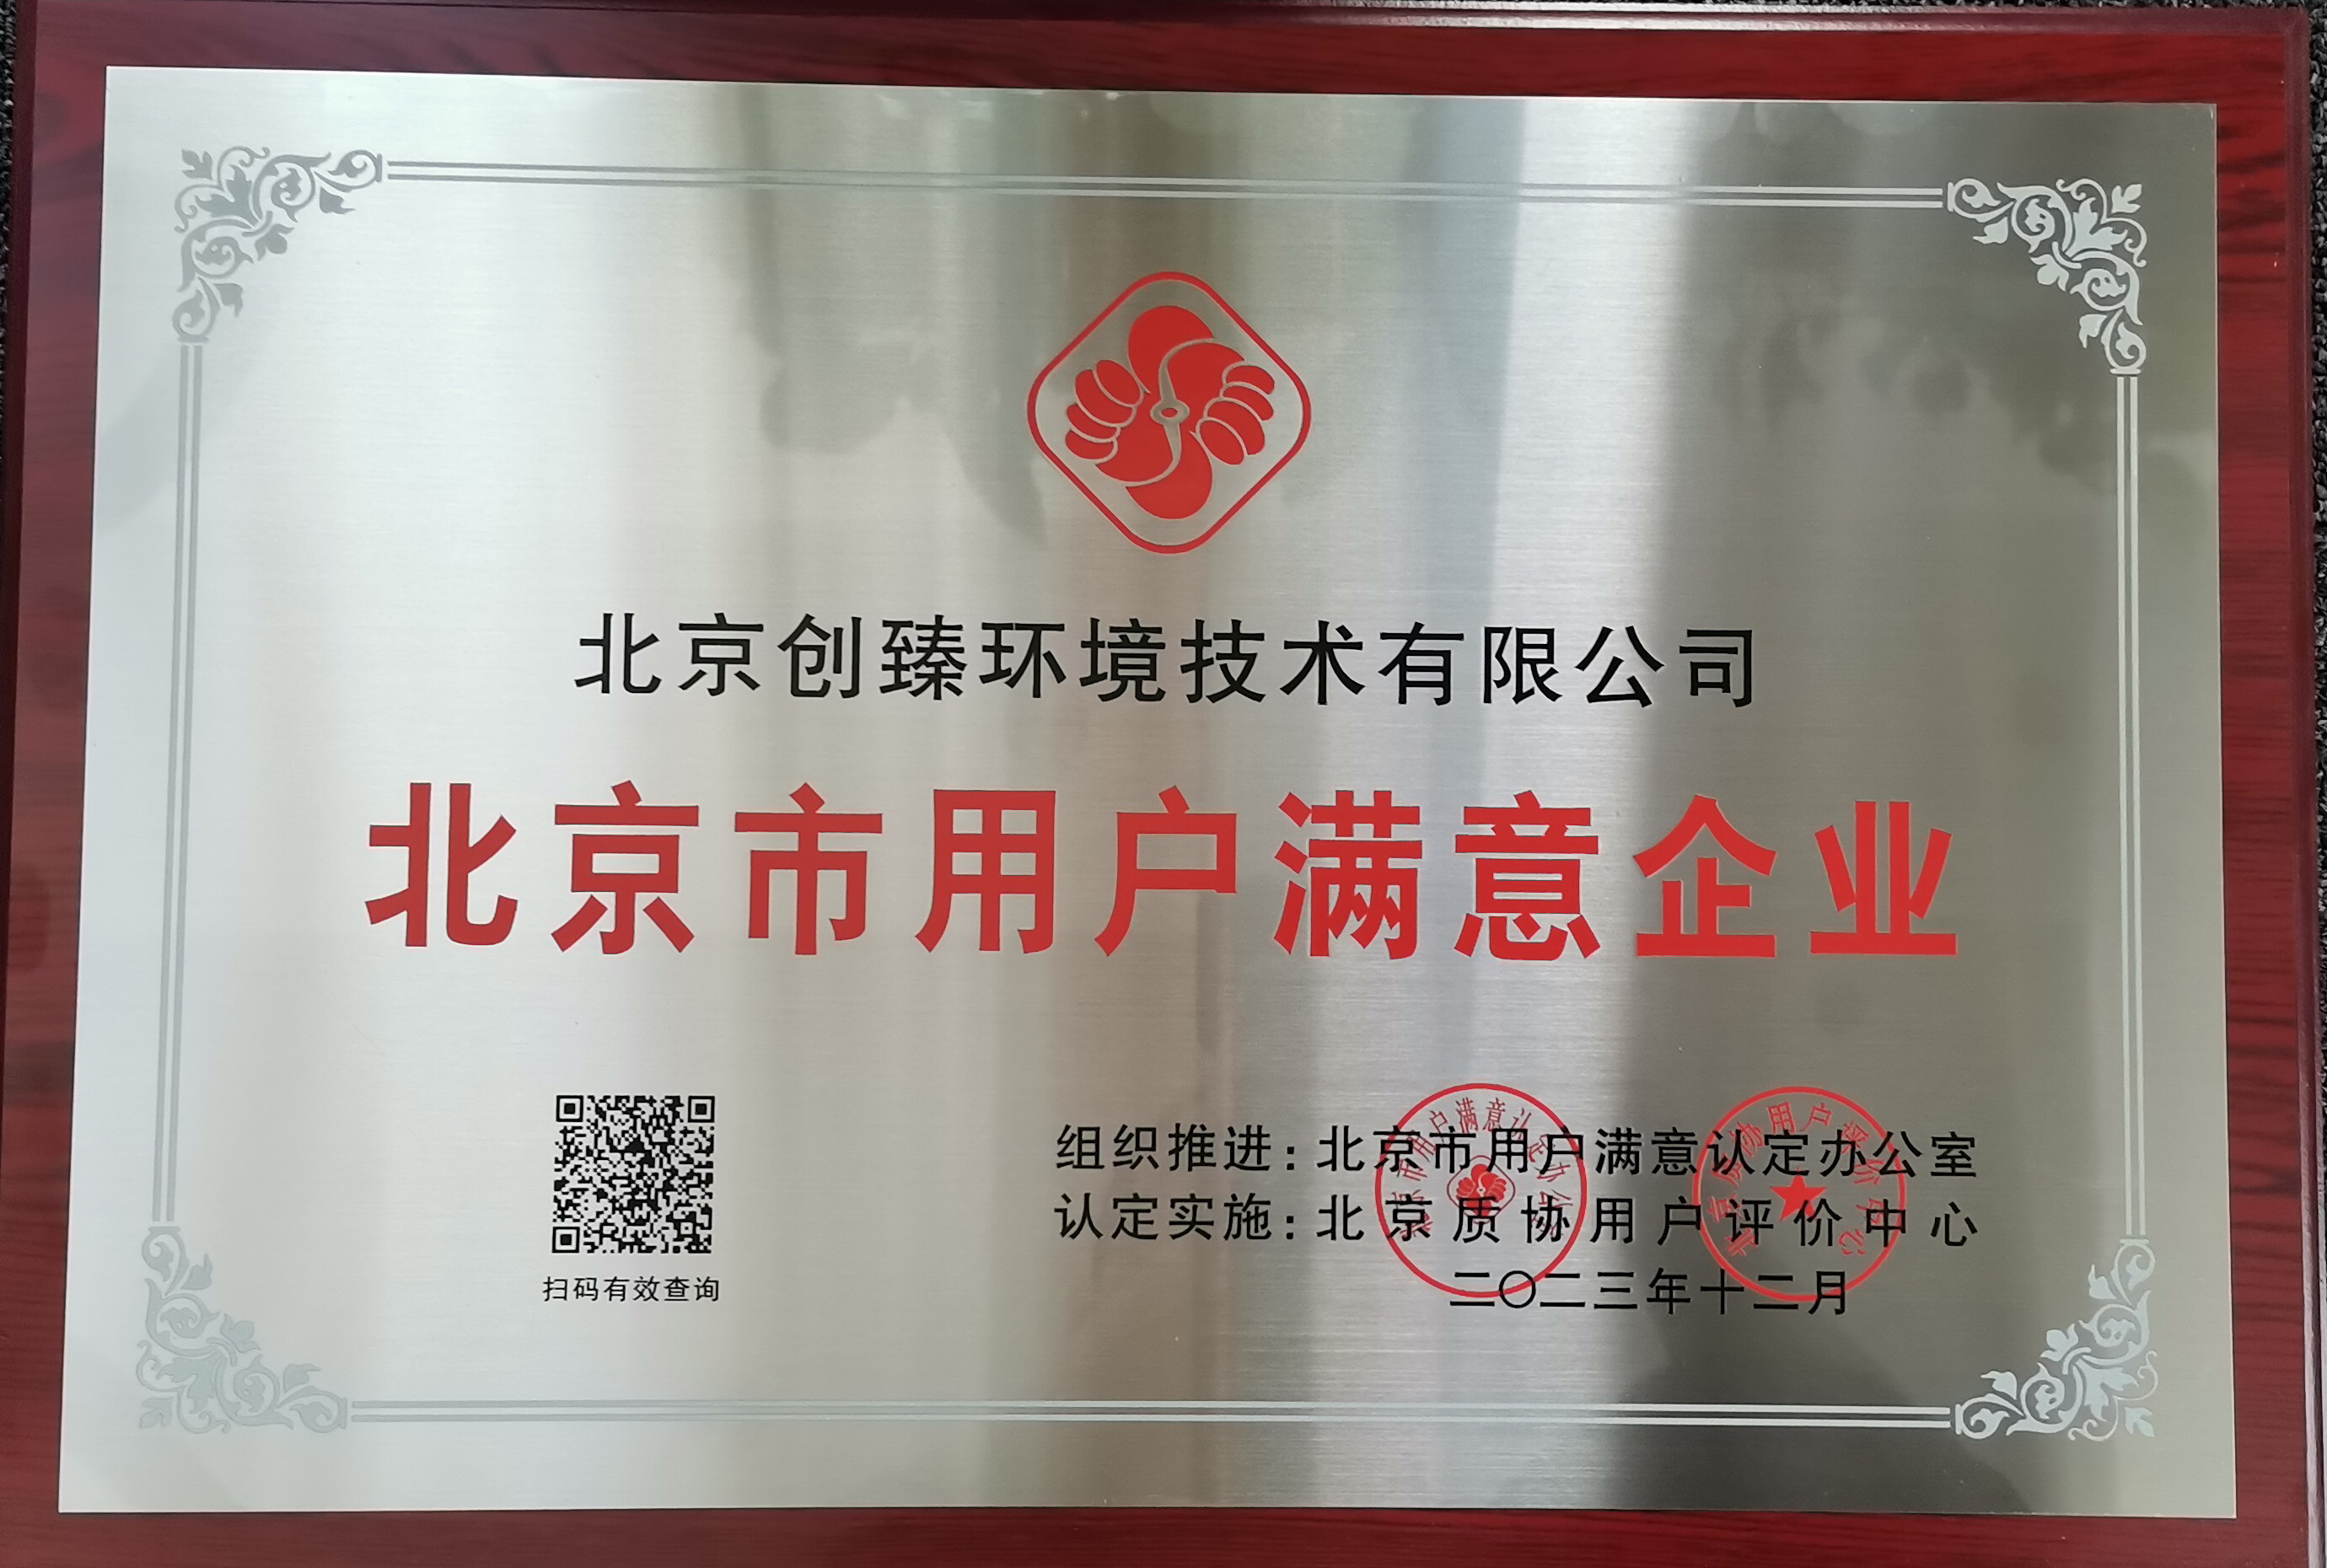 创臻环境喜获“北京市用户满意企业”荣誉称号